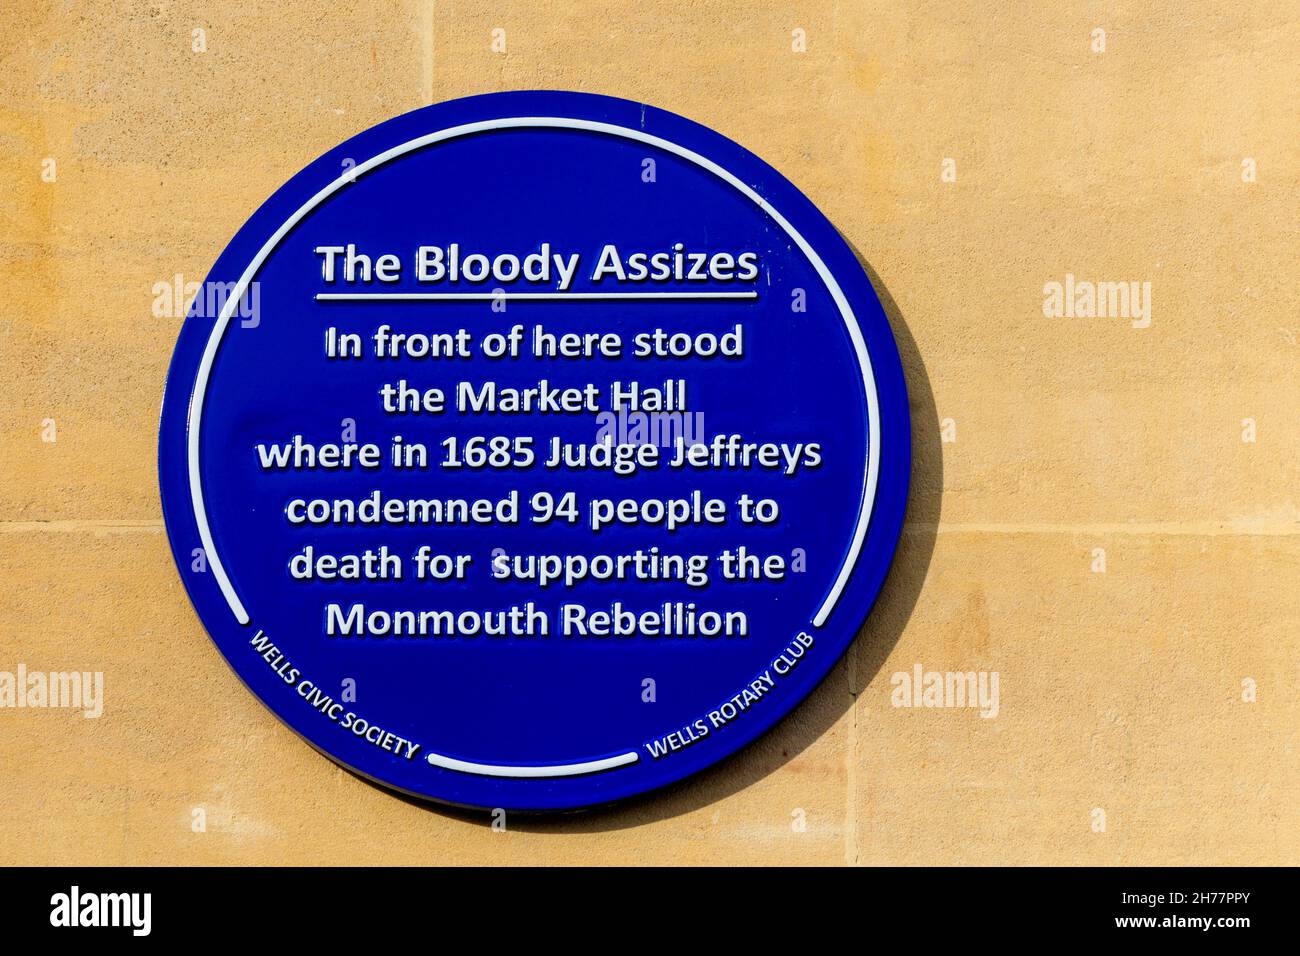 Une plaque bleue dans la place du marché à Wells, commémorant les événements du juge Jeffreys et de la rébellion de Monmouth en 1685, Somerset, Angleterre, Royaume-Uni Banque D'Images